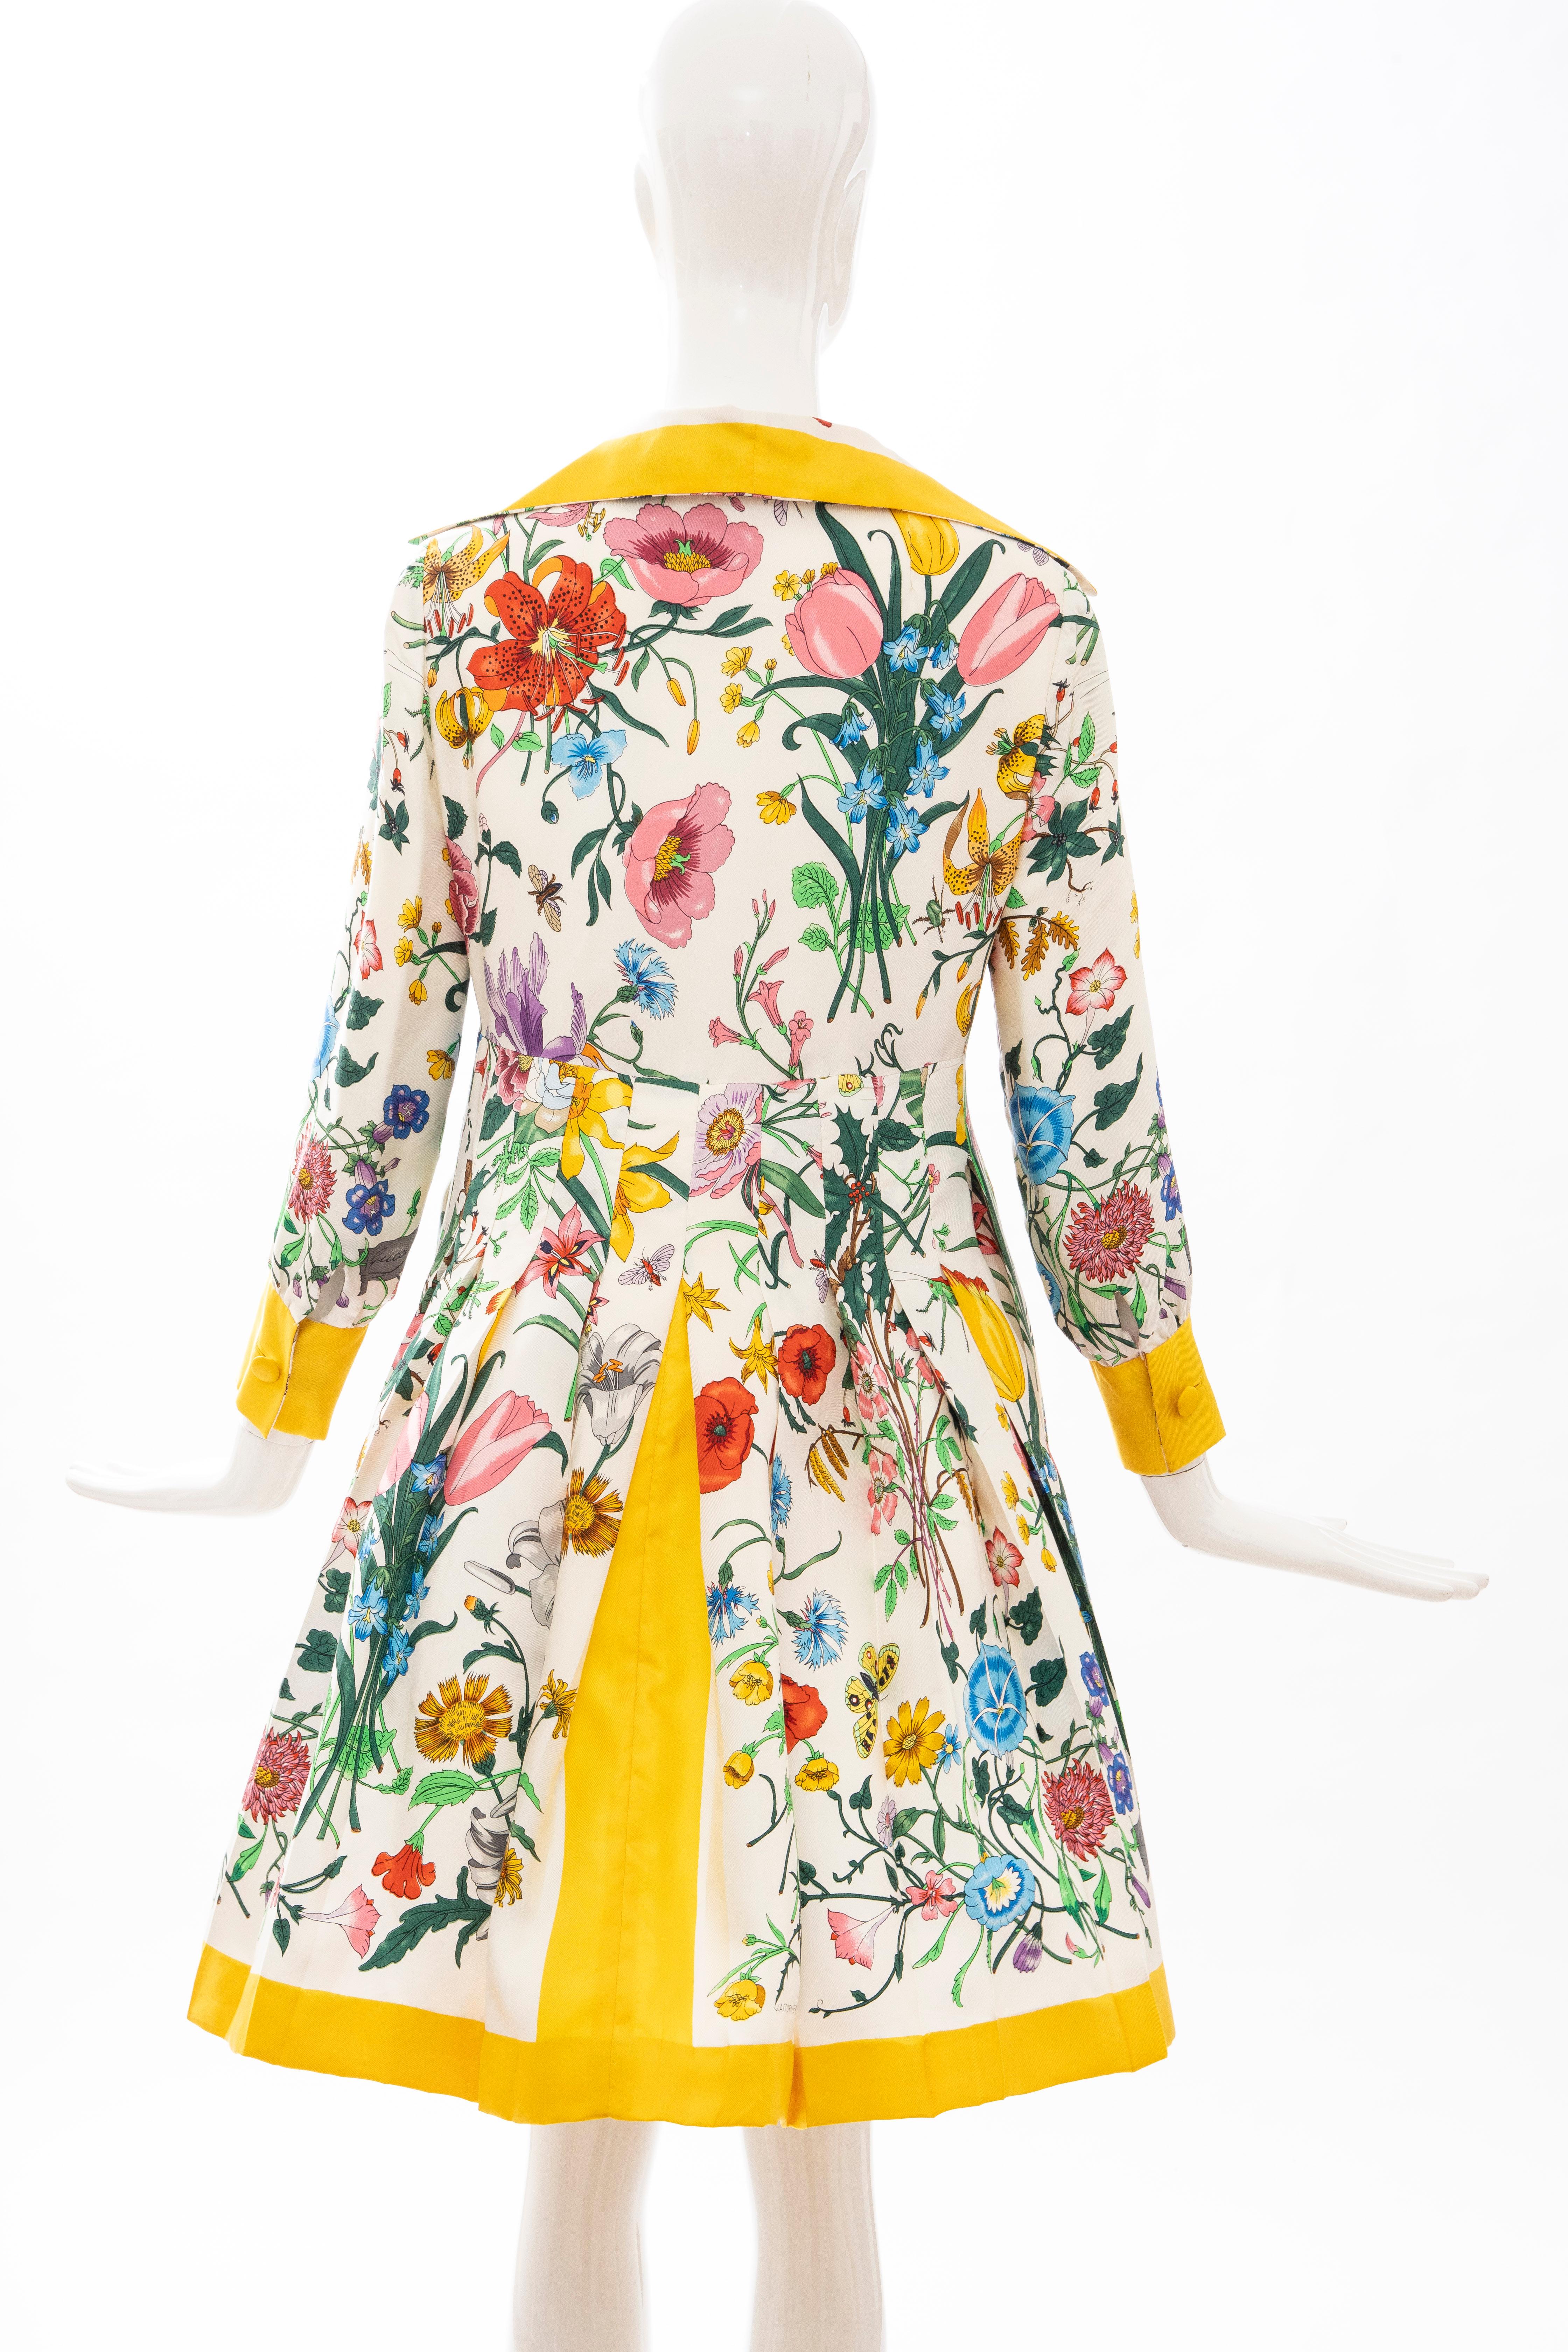 Gucci Vittorio Accornero Flora Fauna Screen Printed Silk Dress, Circa: 1970's 2